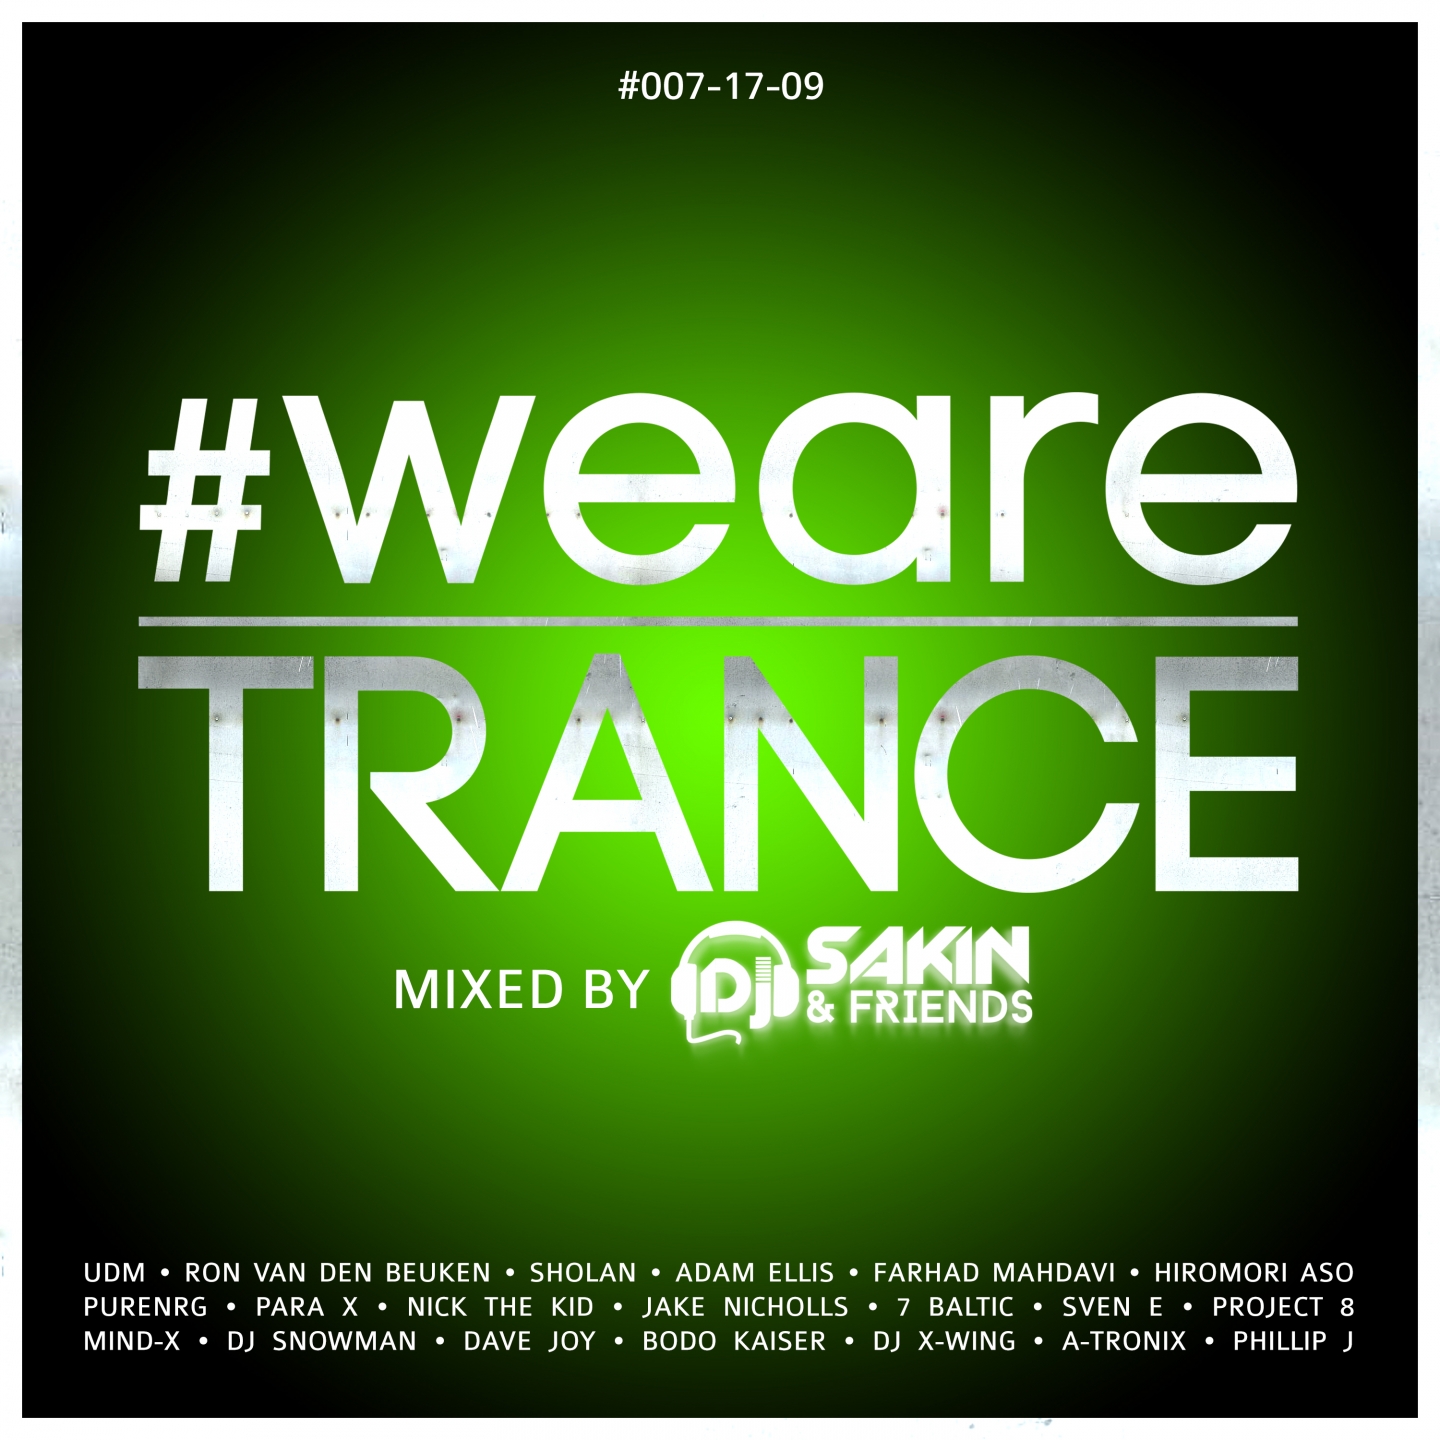 #WeAreTrance #007-17-09 (Mixed by DJ Sakin)